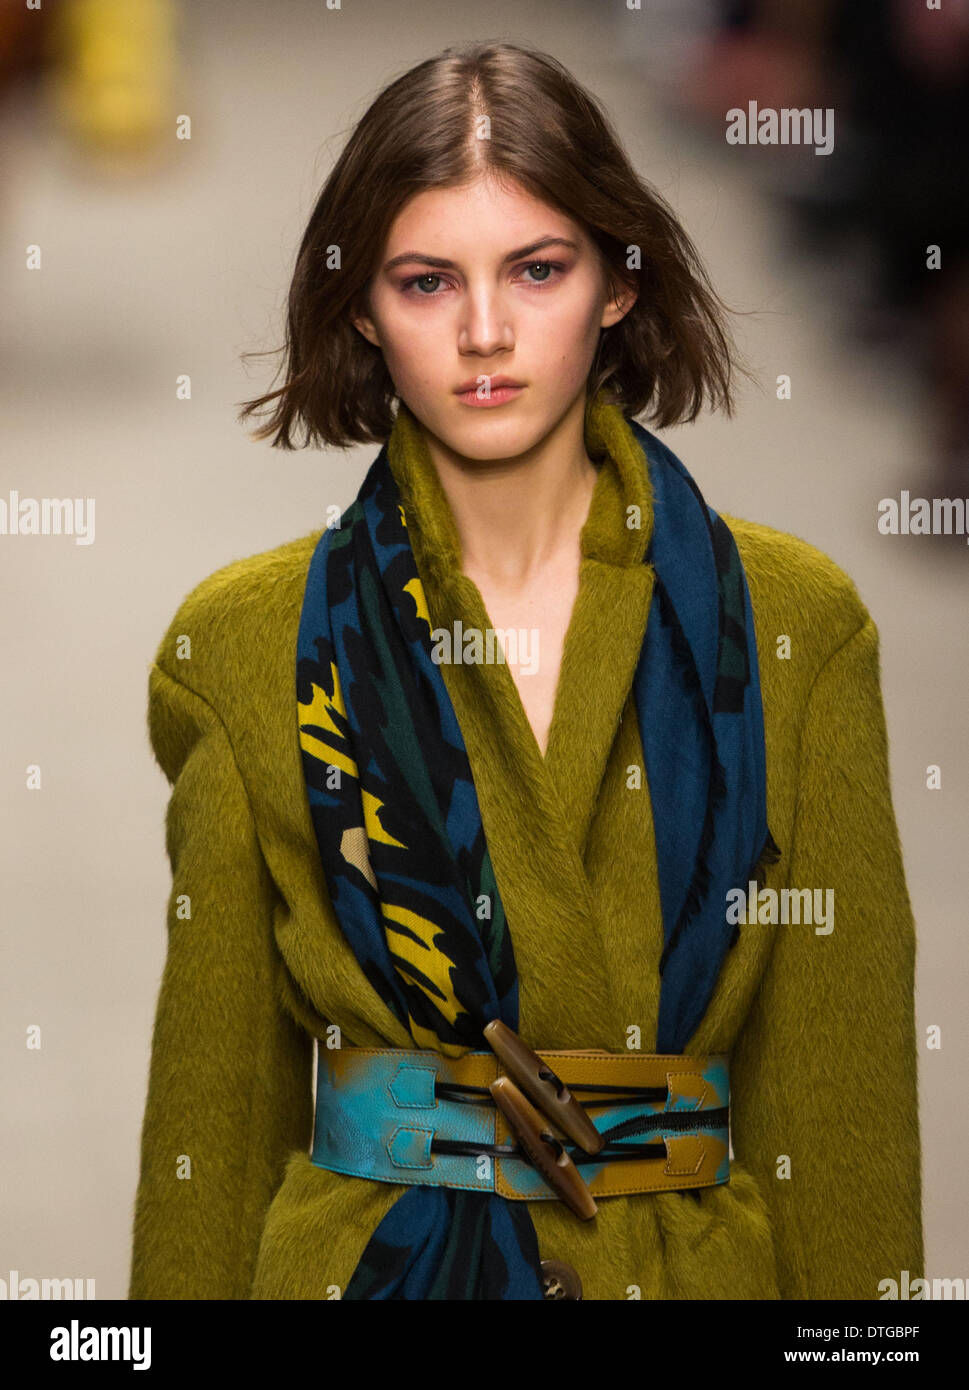 Londra, Gran Bretagna. 17 feb 2014. Un modello presenta una creazione dal Burberry Prorsum Autunno/Inverno 2014 raccolta durante la London Fashion Week di Londra, Gran Bretagna, nel febbraio 17, 2014. Credito: Tang Shi/Xinhua/Alamy Live News Foto Stock